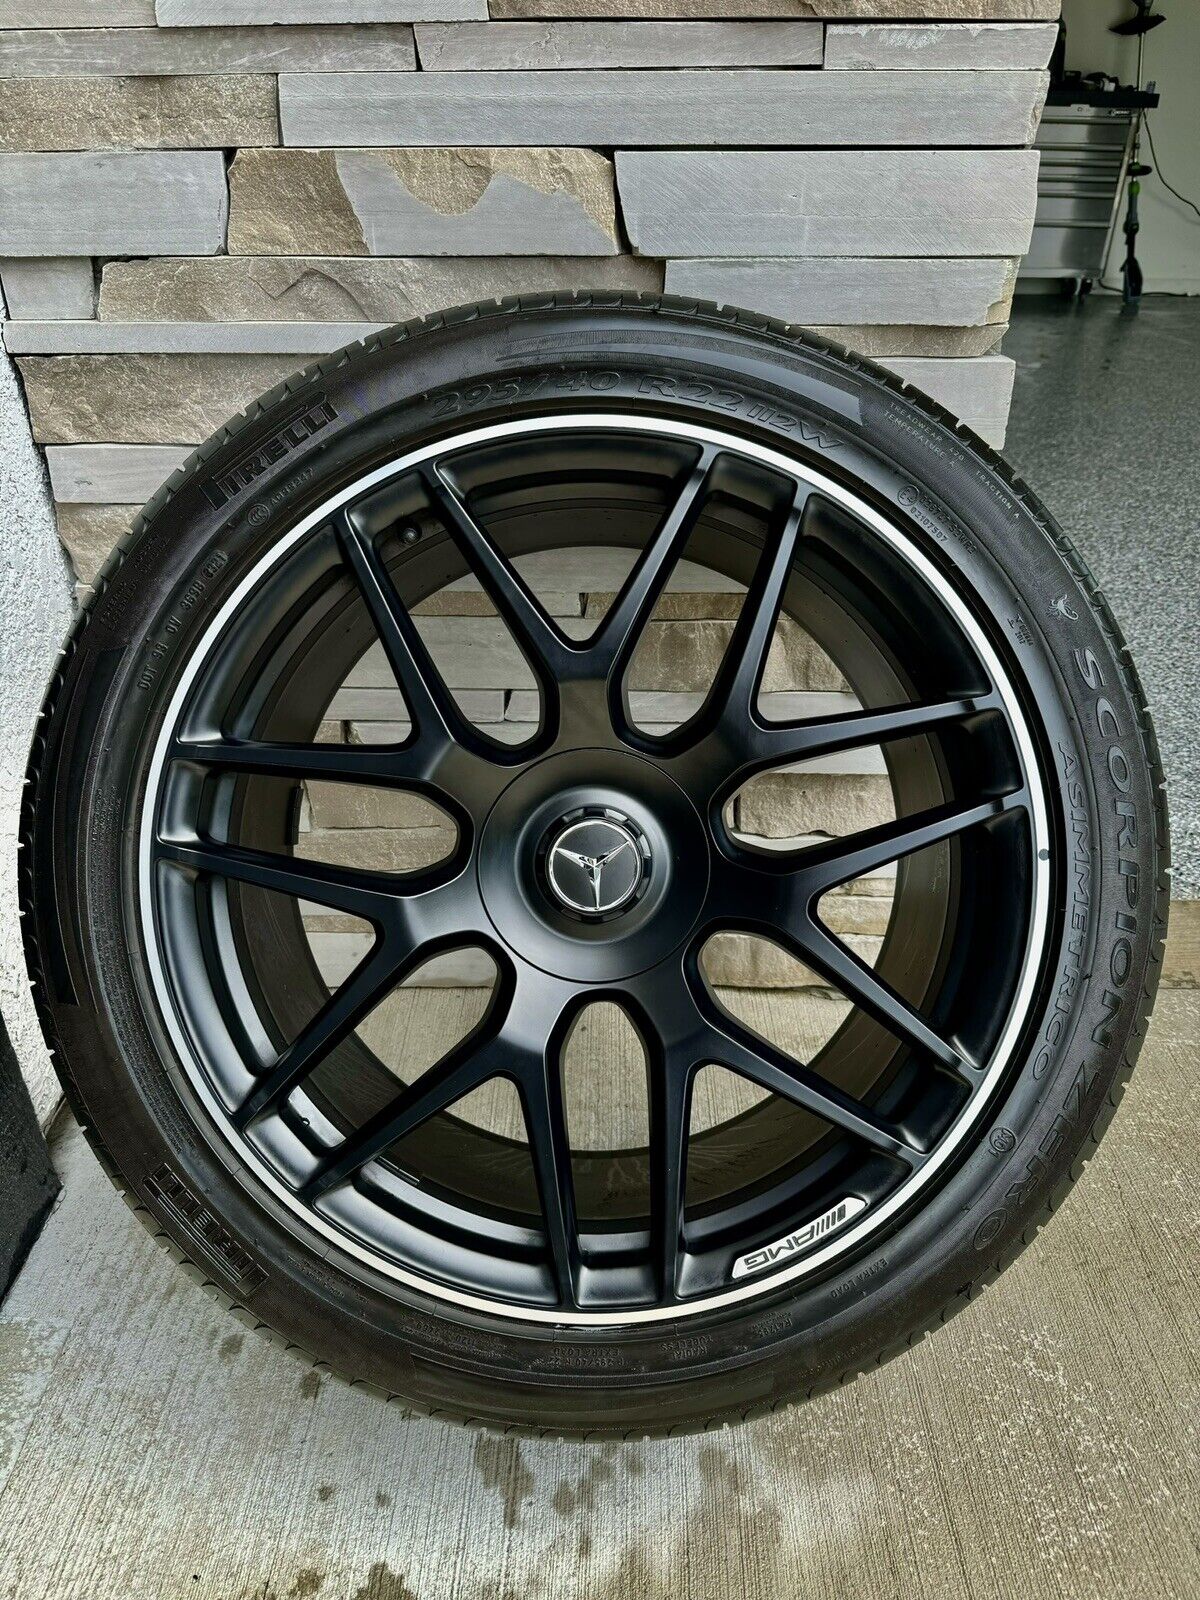 Genuine AMG Mercedes G63 Wheels 22 inch Oem Factory Pirelli OEM Tires NEW